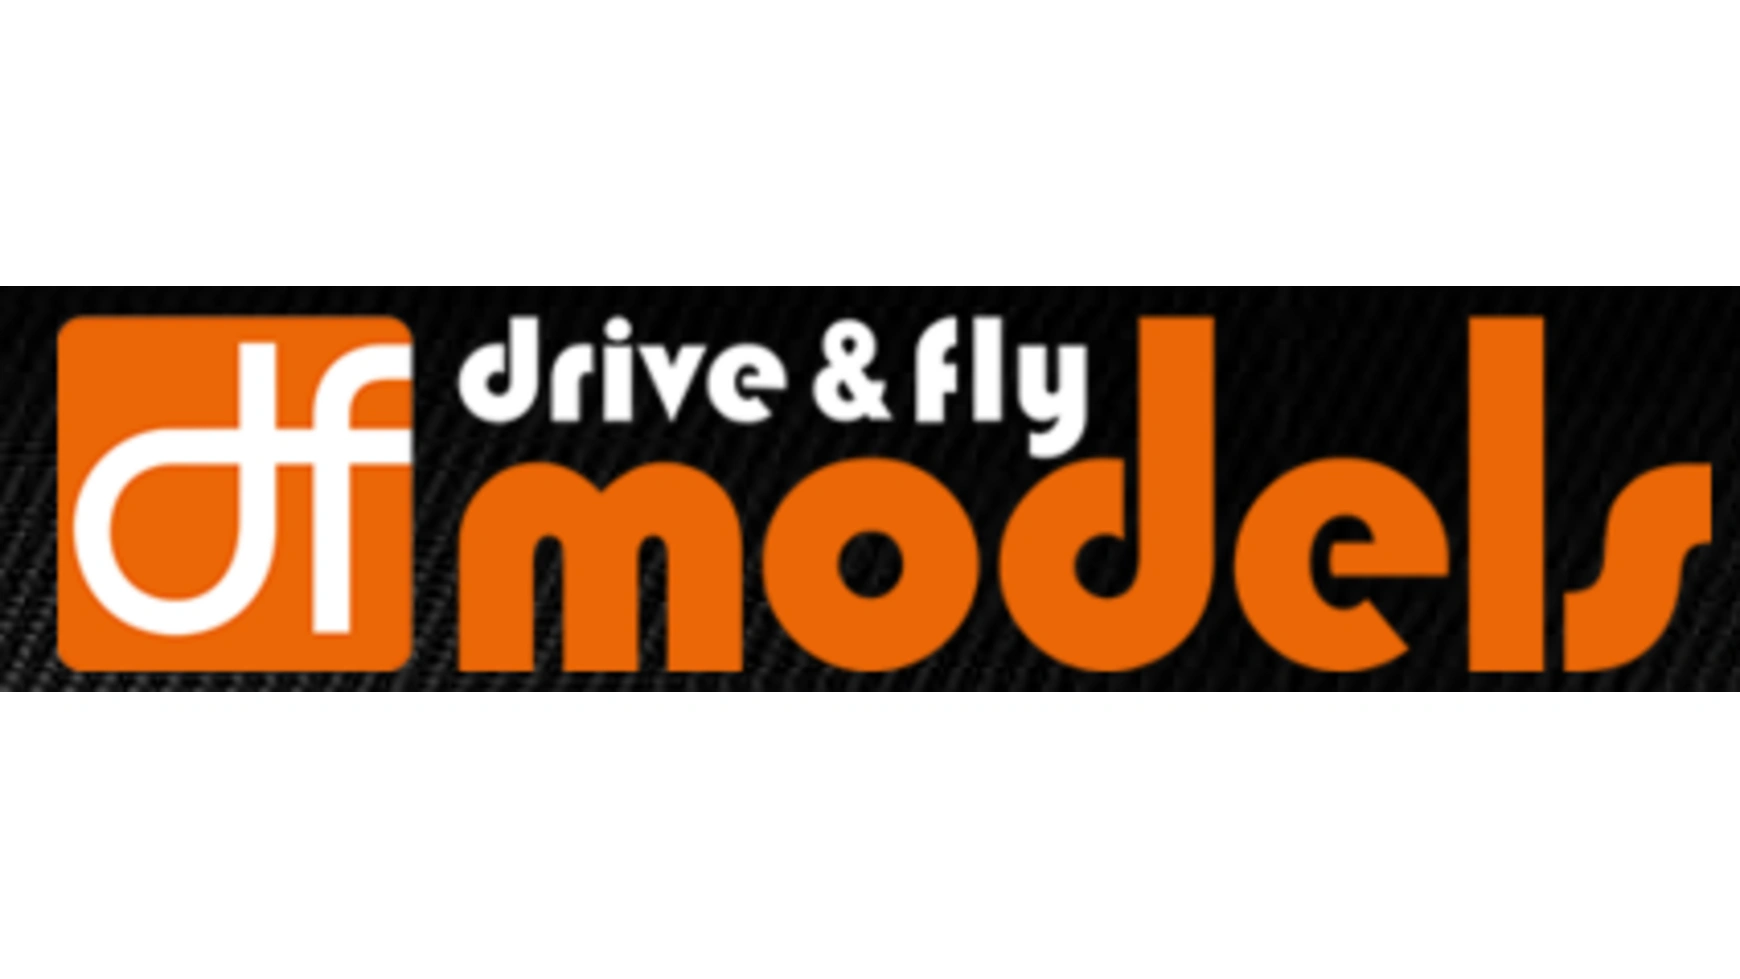 Drive & Fly 1571 АККУМУЛЯТОР 7,4 ВОЛЬТ 1200 мАч Lilon Df Models аккумулятор stonering 2930 мач сменный аккумулятор для мобильного телефона crosscall odyssey